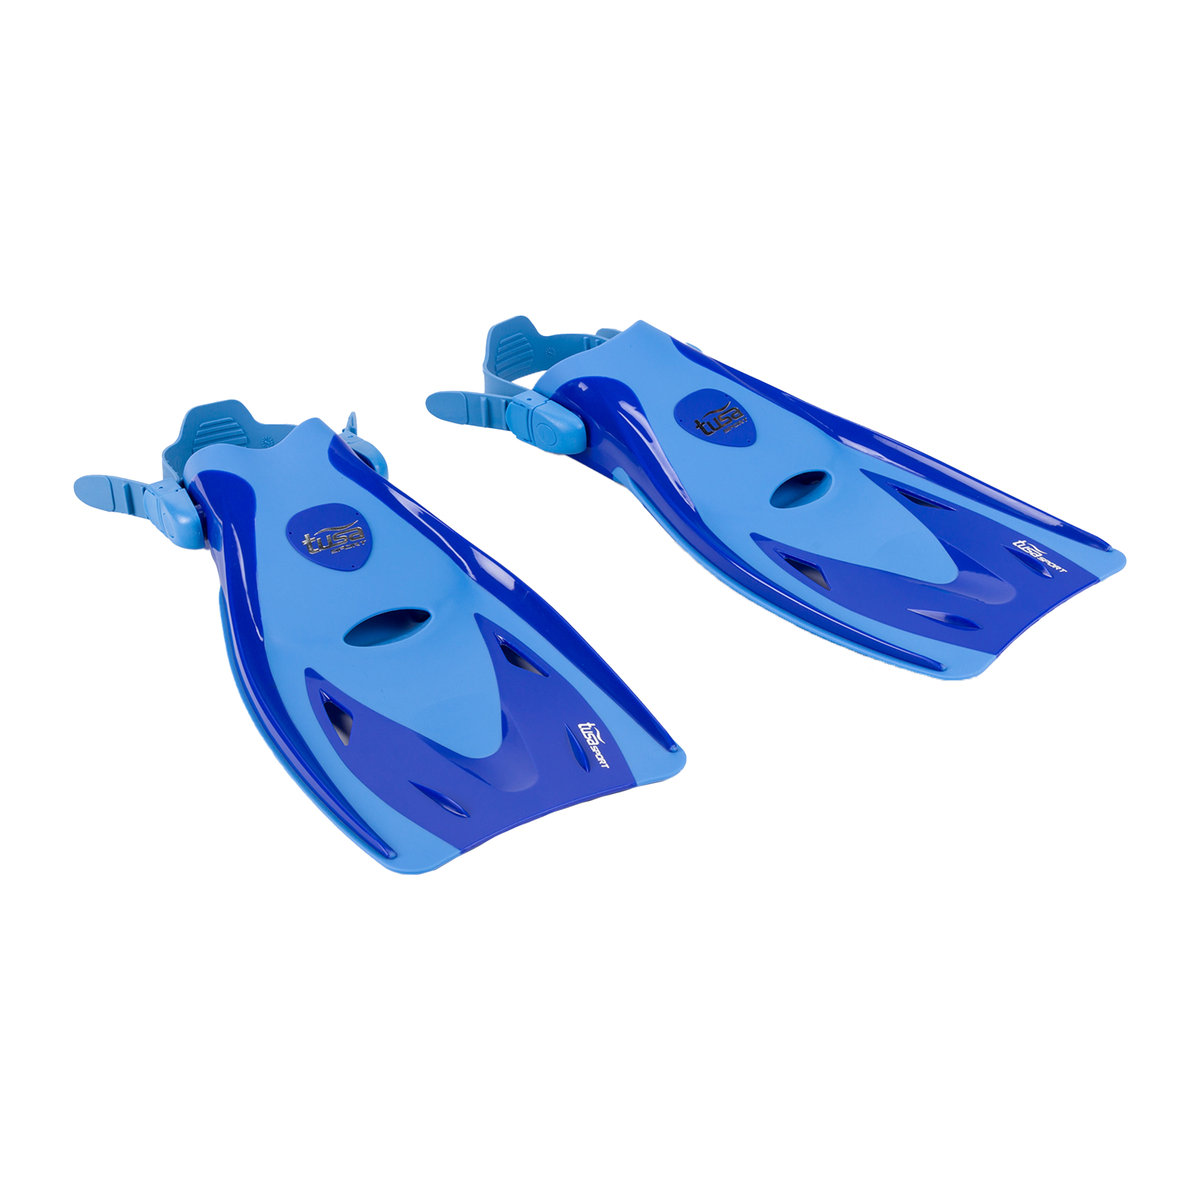 Tusa aleta regulable Sport Long Blade UF-21 płetw do pływania unisex, niebieski, S 4983608459288